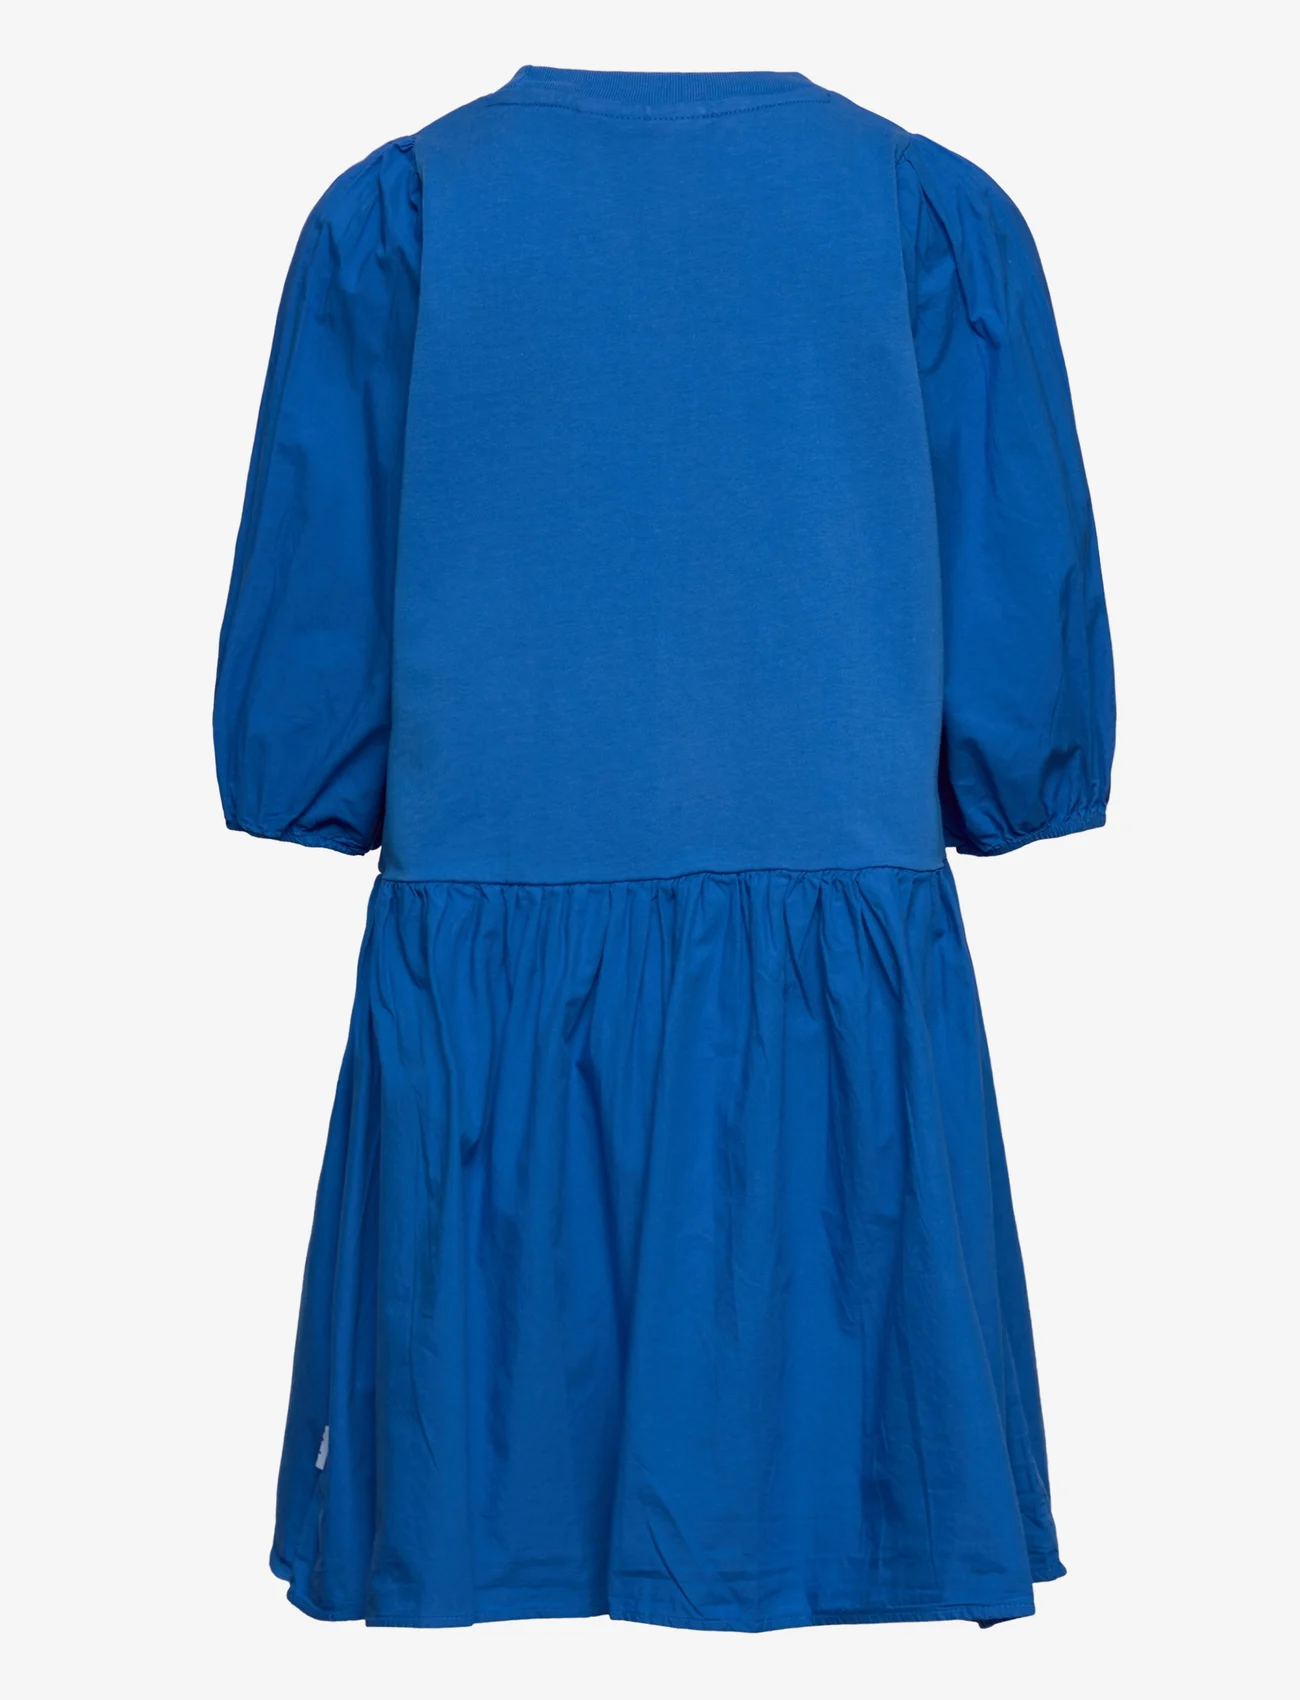 Molo - Cece - sukienki codzienne z długim rękawem - lapis blue - 1